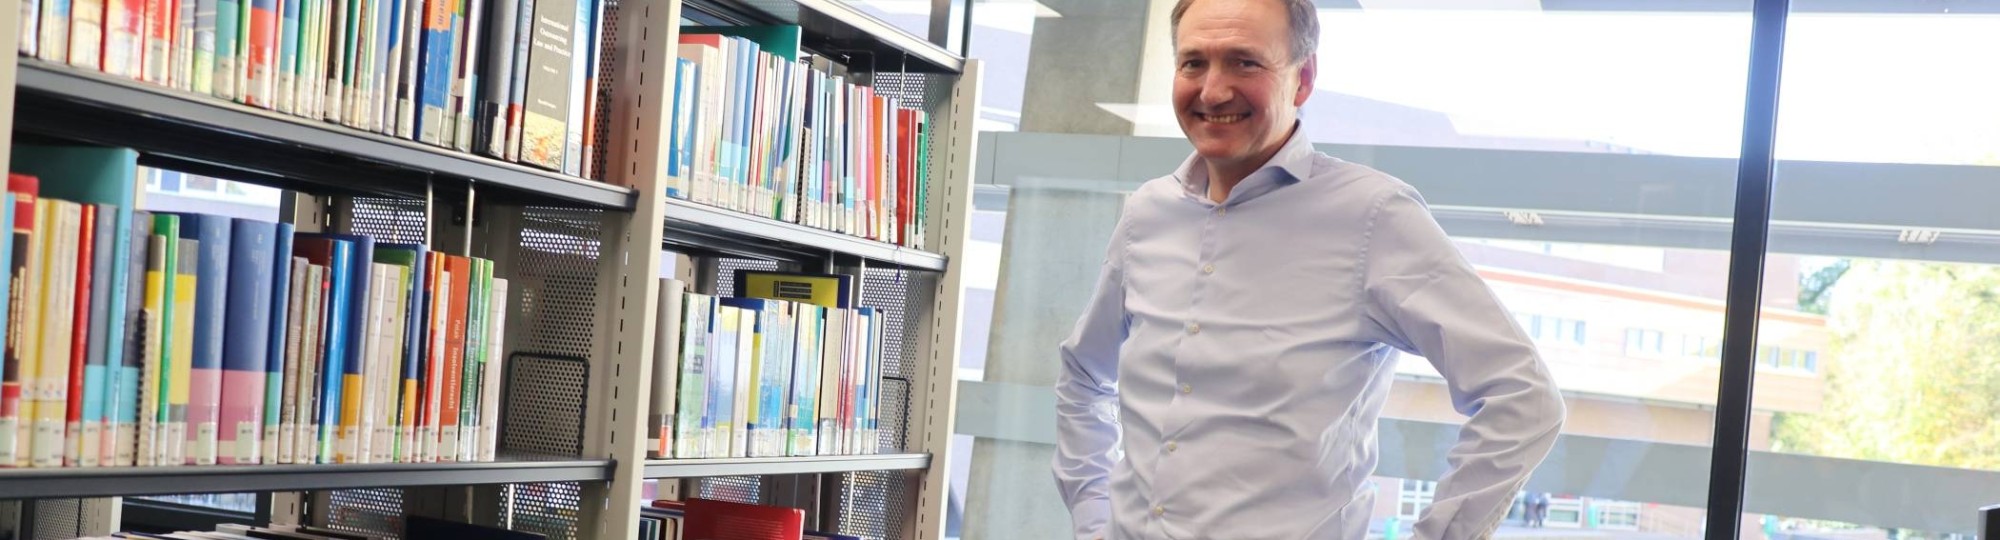 Docent-onderzoeker Ger Sluman staand voor boekenkast in het studiecentrum op Ruitenberglaan 31, na een interview over zijn onderzoek.